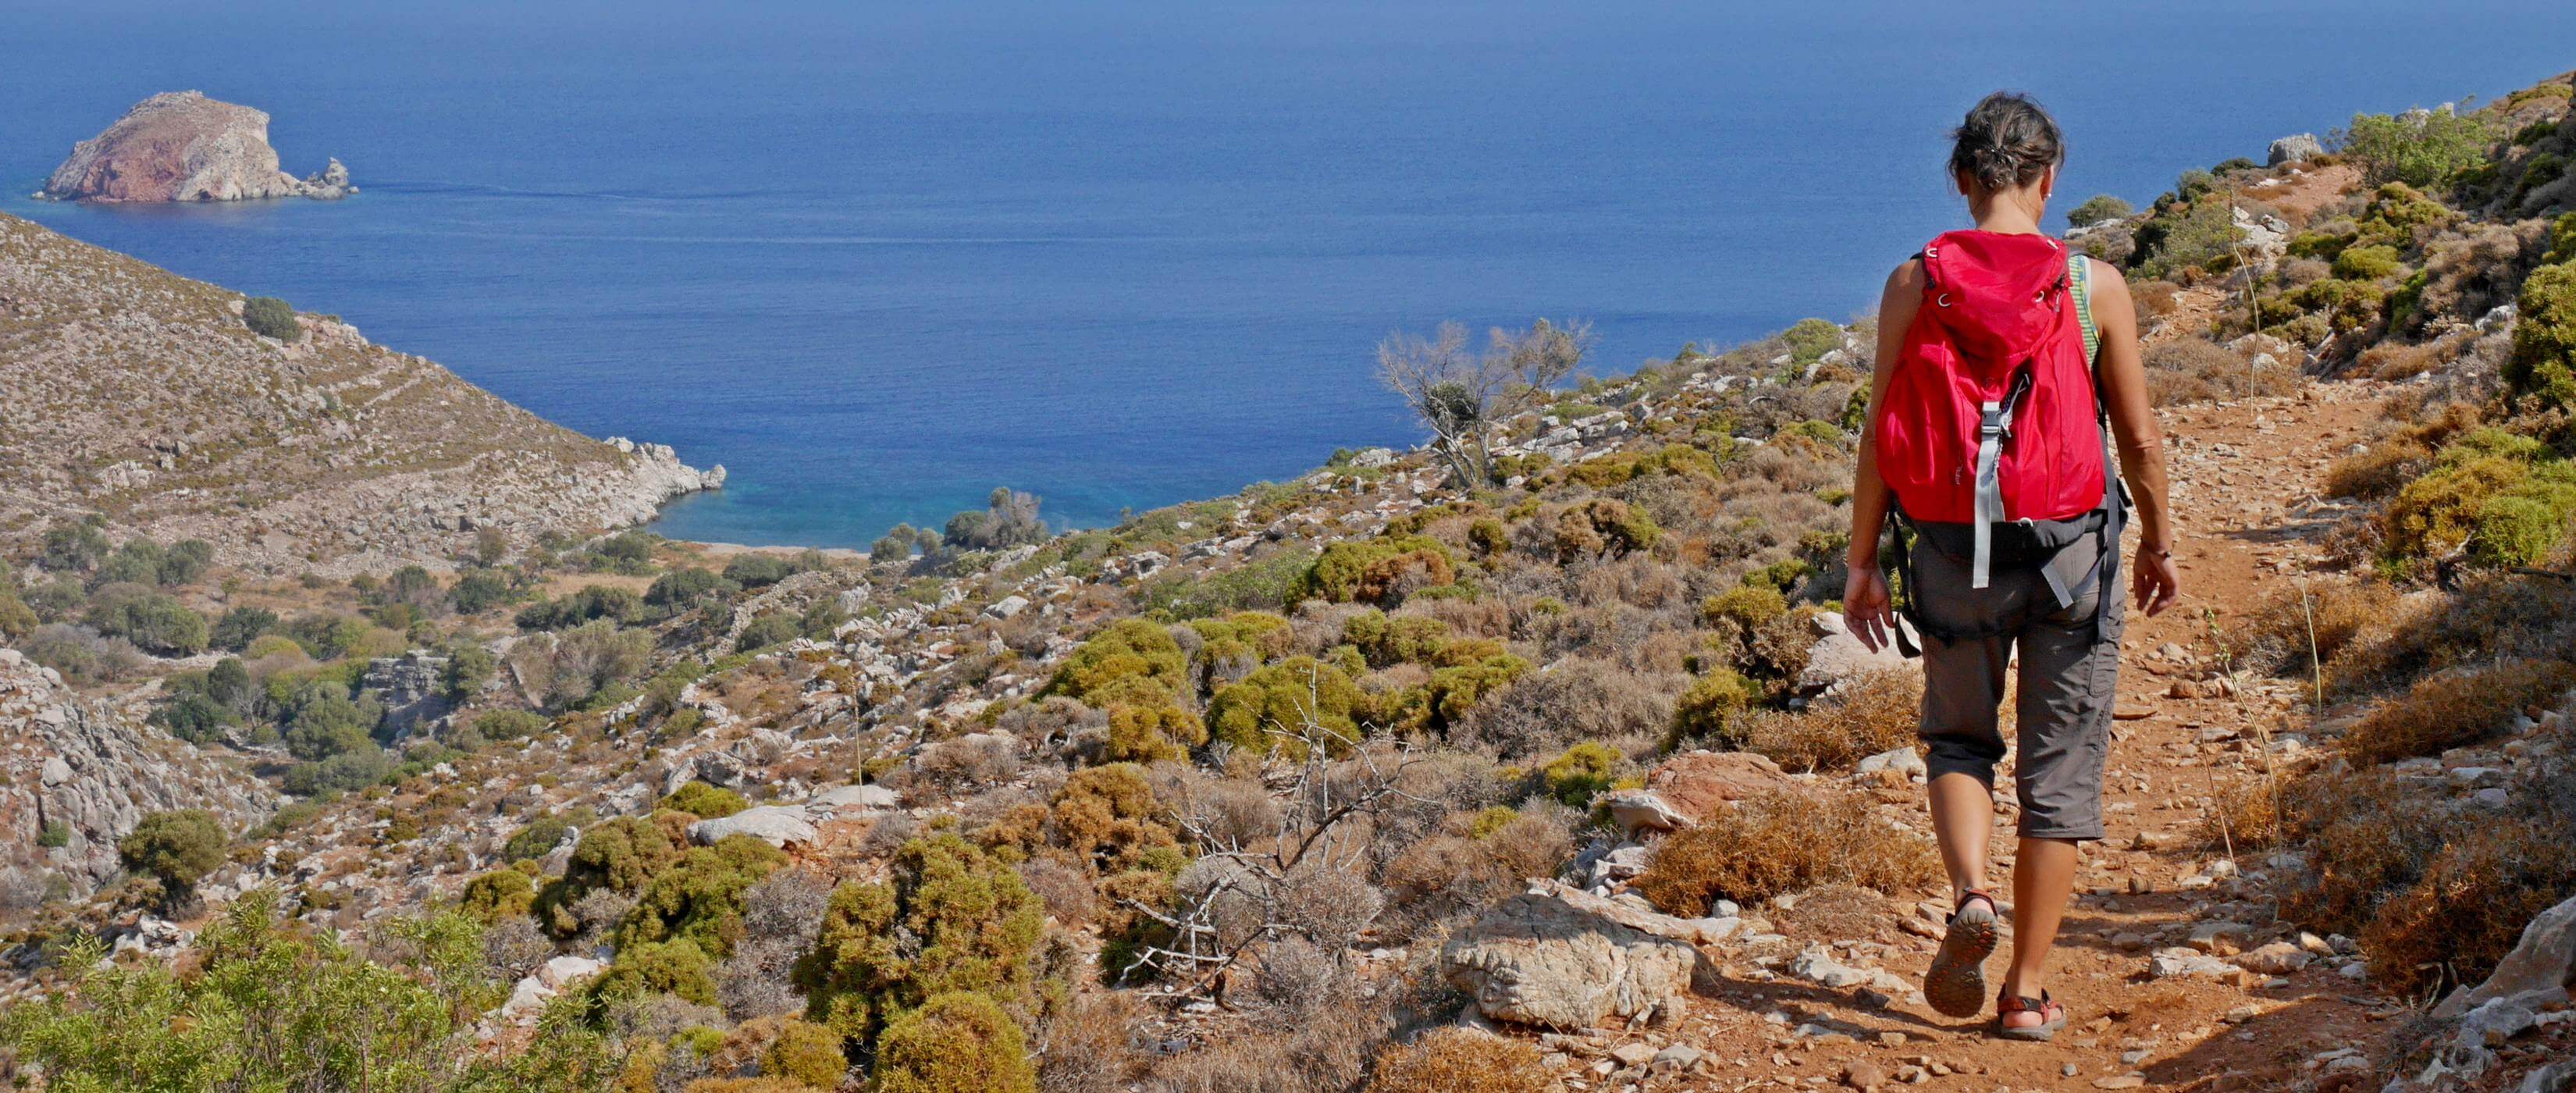 Individuelle Wanderreise auf der griechischen Insel Tilos - Lupe Reisen